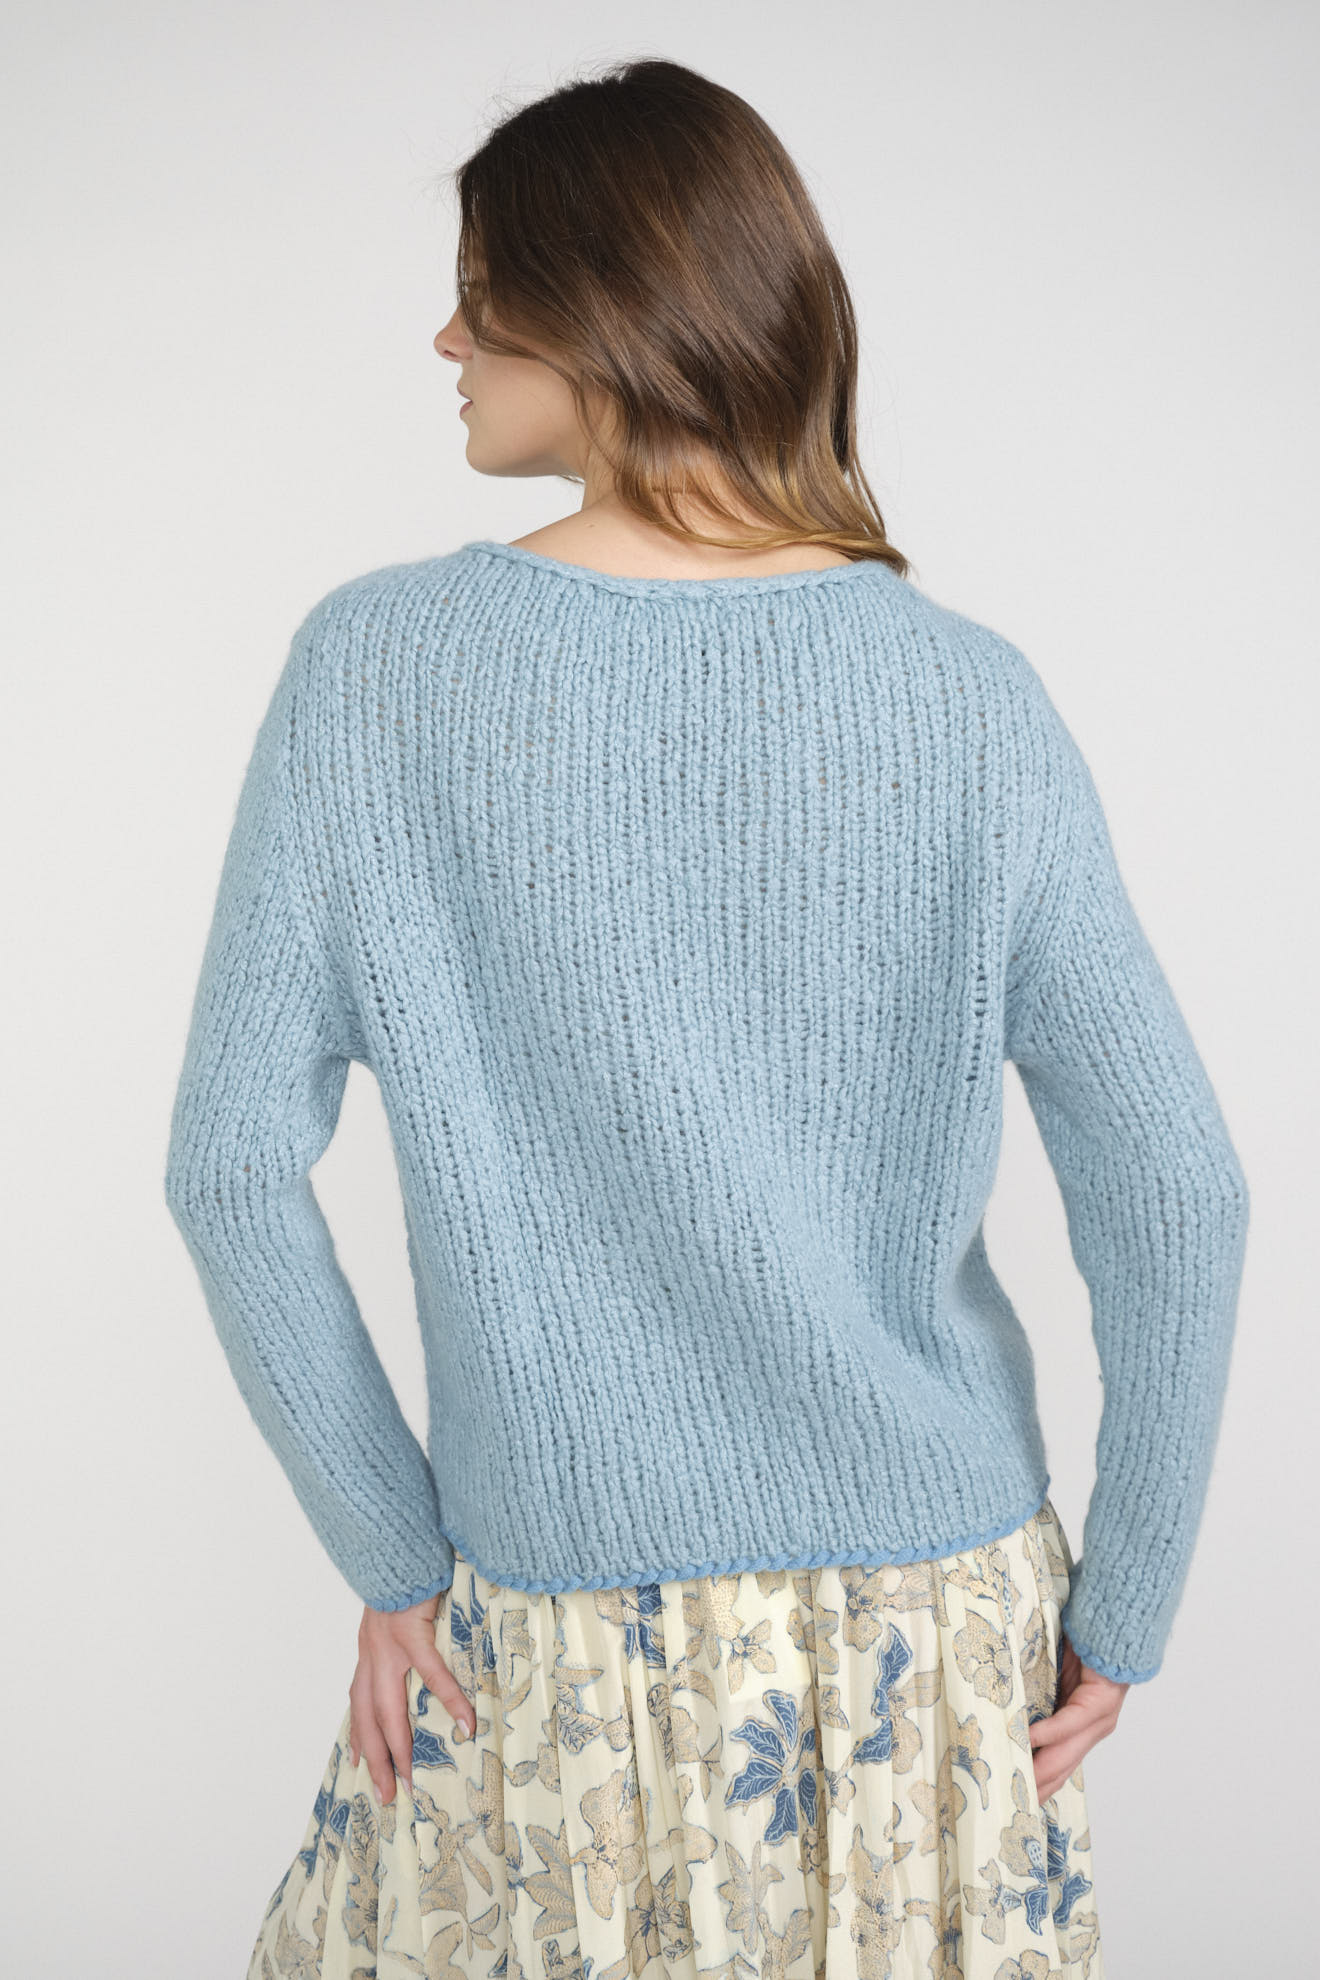 wommelsdorf sweater blue plain cotton